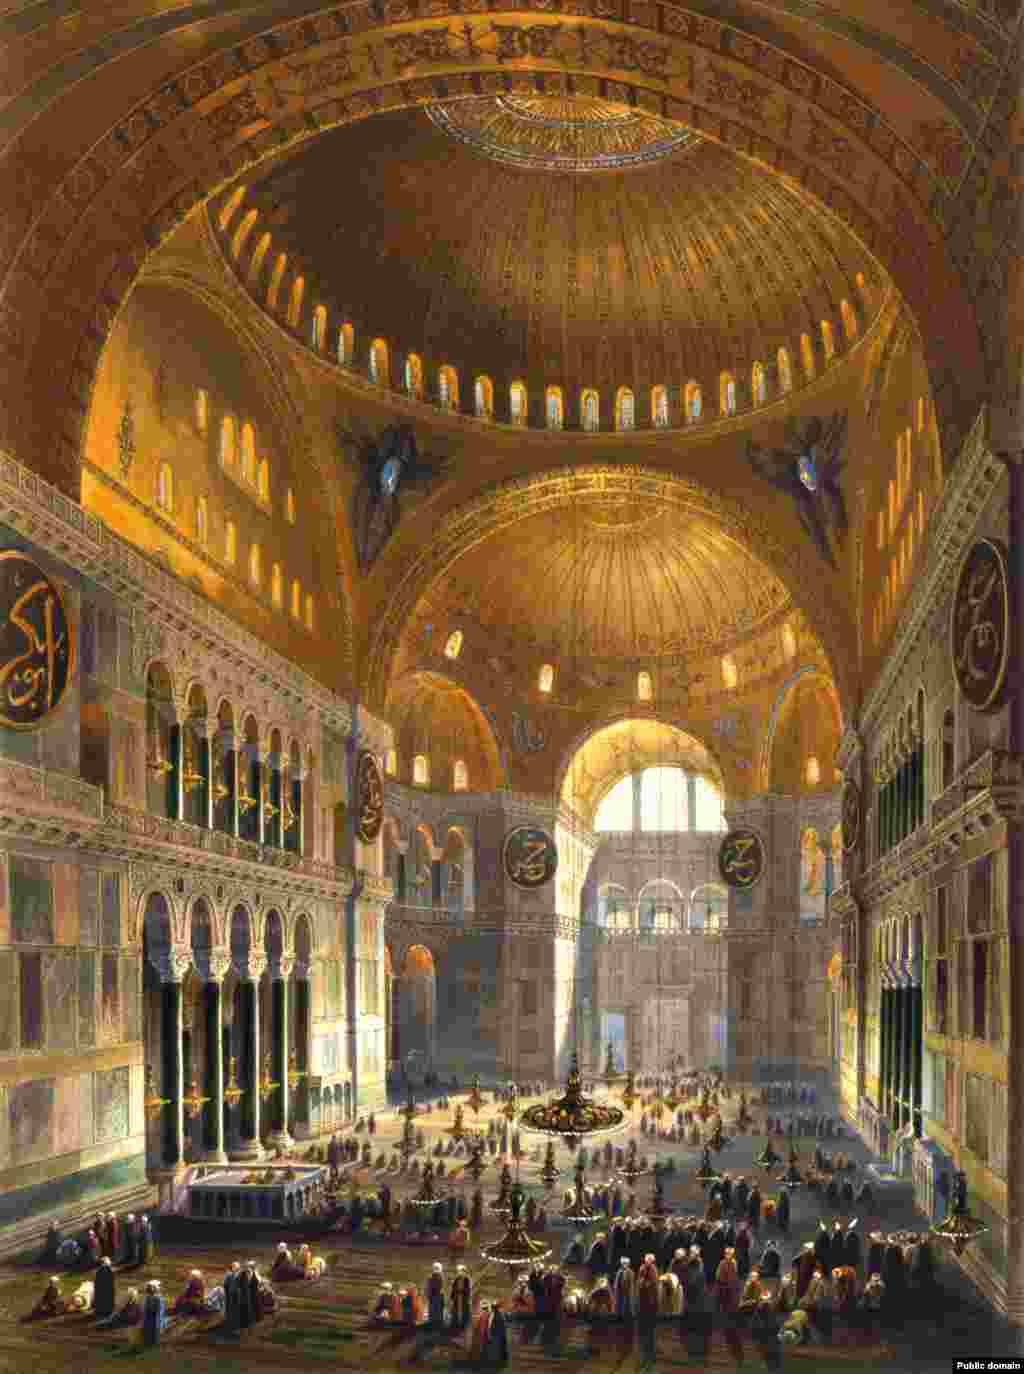 Иллюстрация 1852 года, запечатлевшая мусульман, молящихся в Айя-Софии, являвшейся тогда мечетью.&nbsp; Храм прослужил мечетью почти 500 лет. Христианские иконы в нем были замазаны или уничтожены.&nbsp; &nbsp;